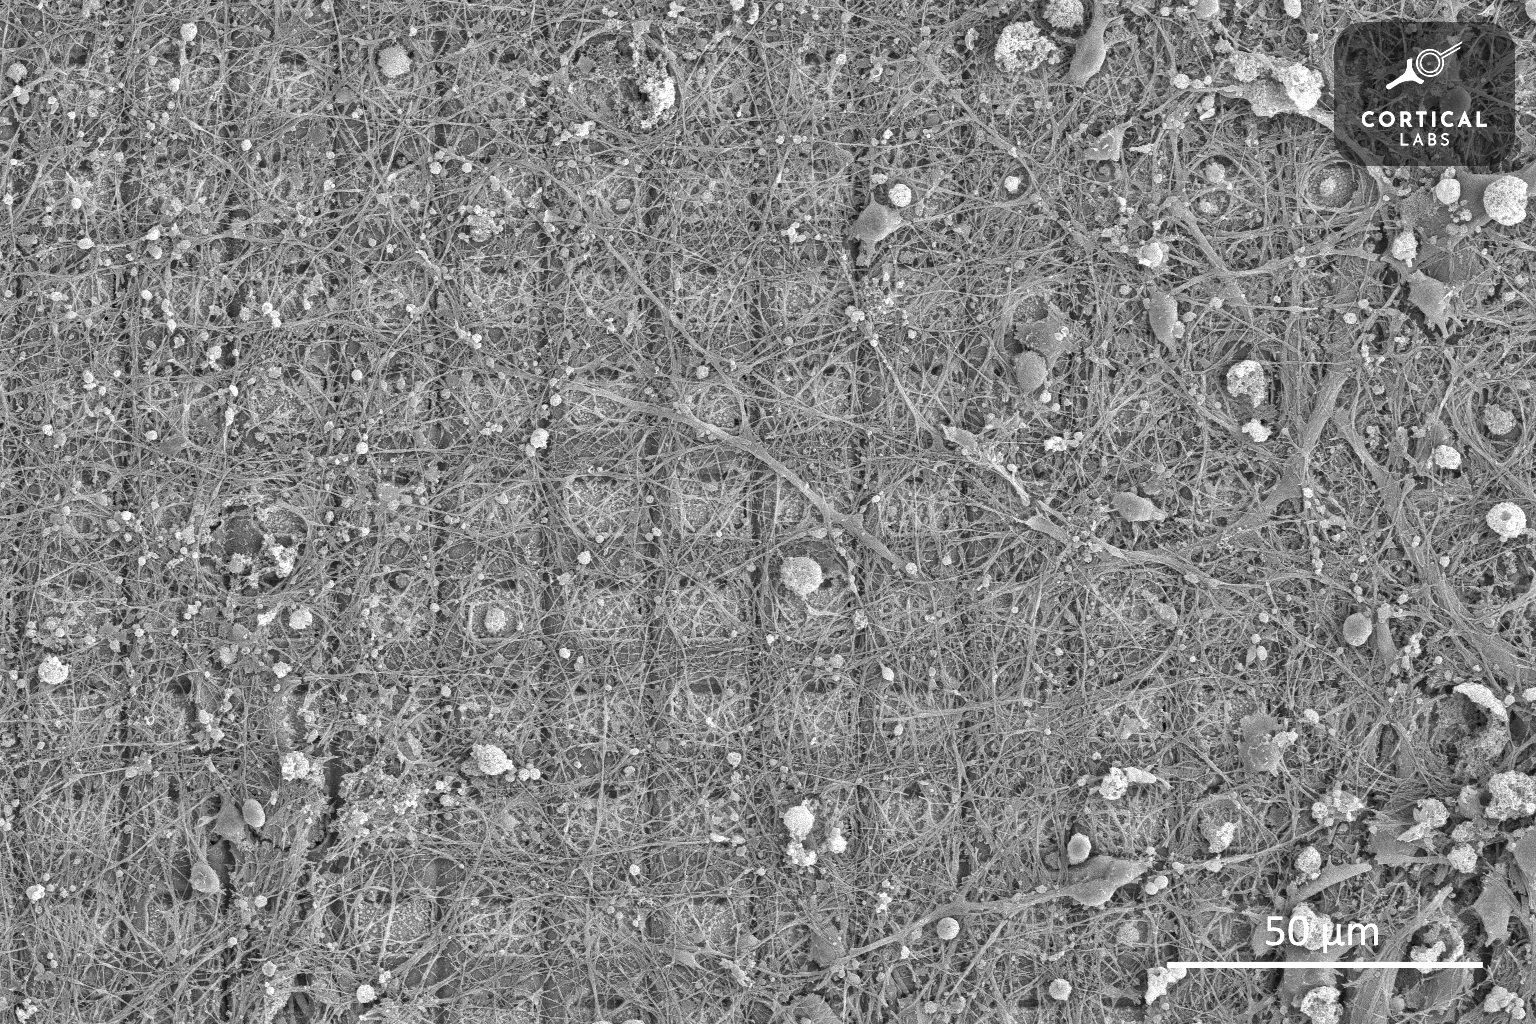 Las células cerebrales que viven en el recipiente pueden aprender a jugar el clásico videojuego Pong.  La foto muestra una imagen de un cultivo de células nerviosas tomada con un microscopio electrónico de barrido.